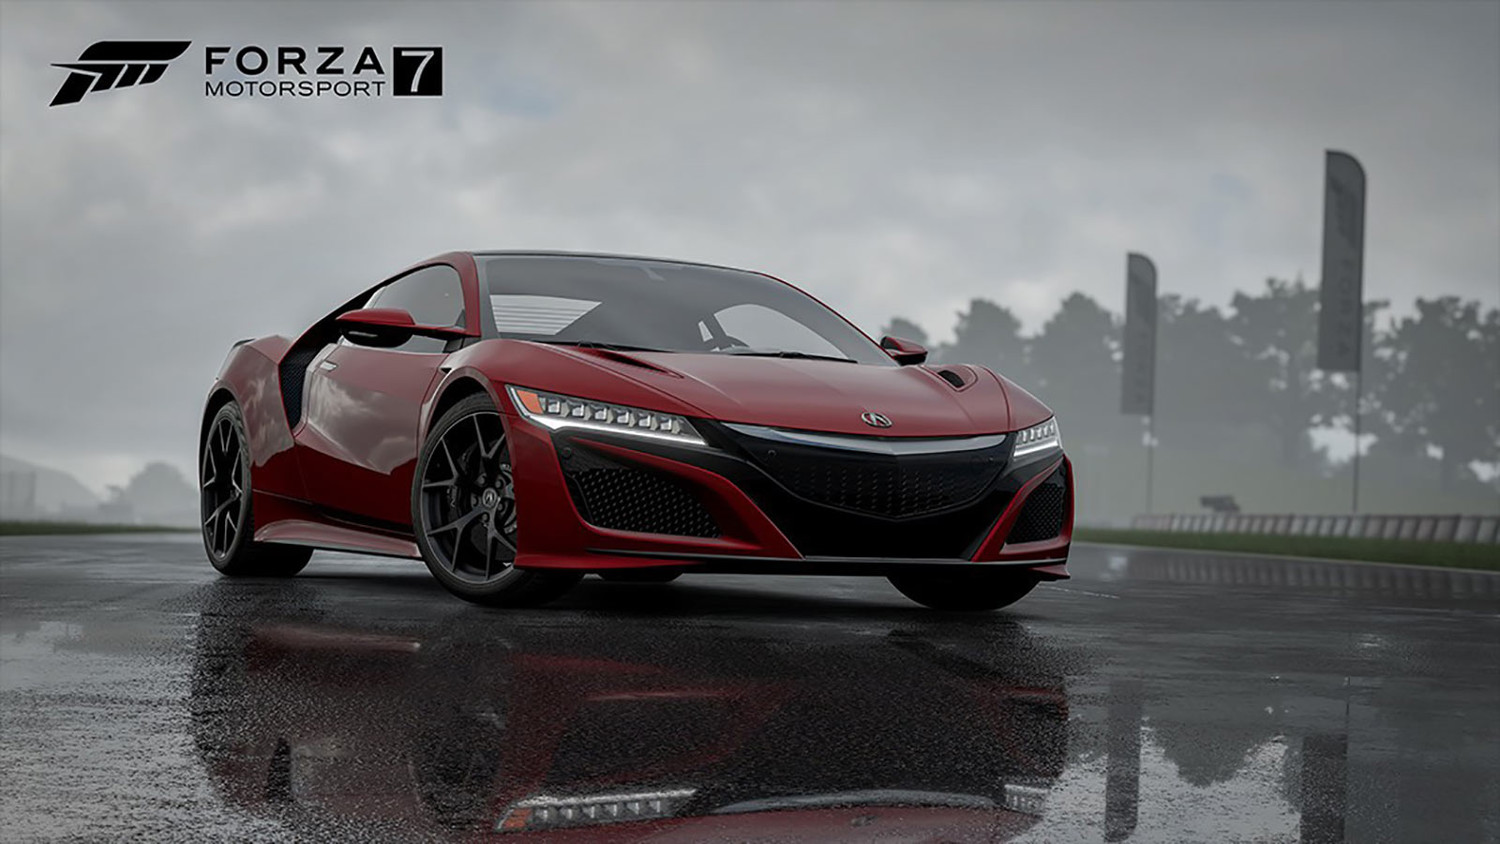 Скриншот к игре Forza Motorsport 7 (2017)